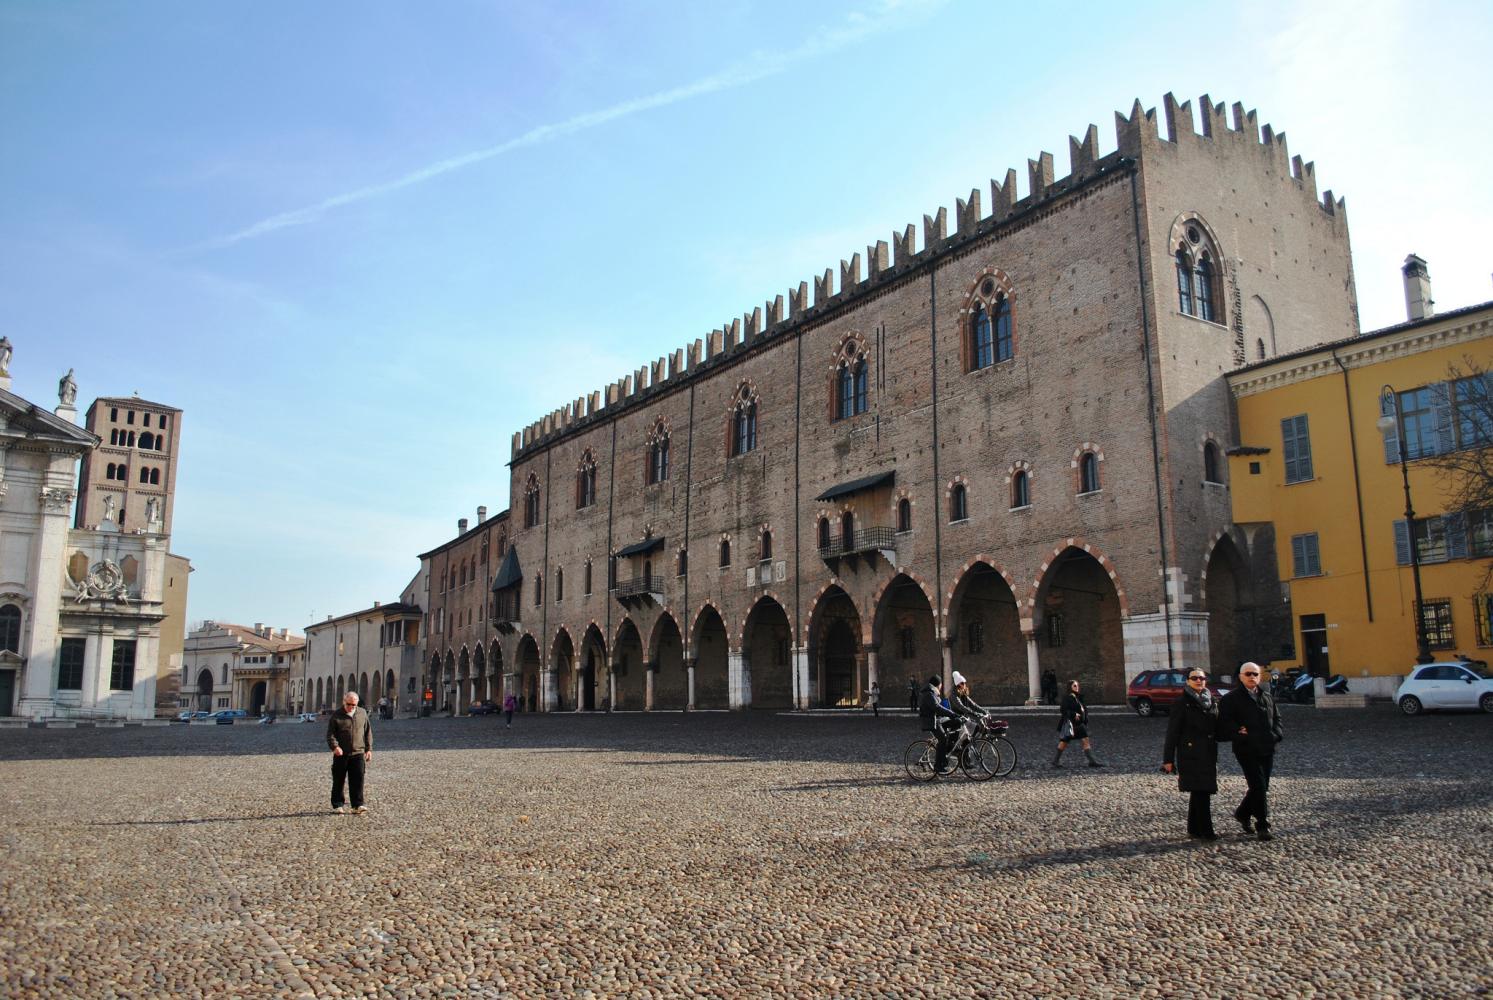 Palazzo Ducale - Mantova